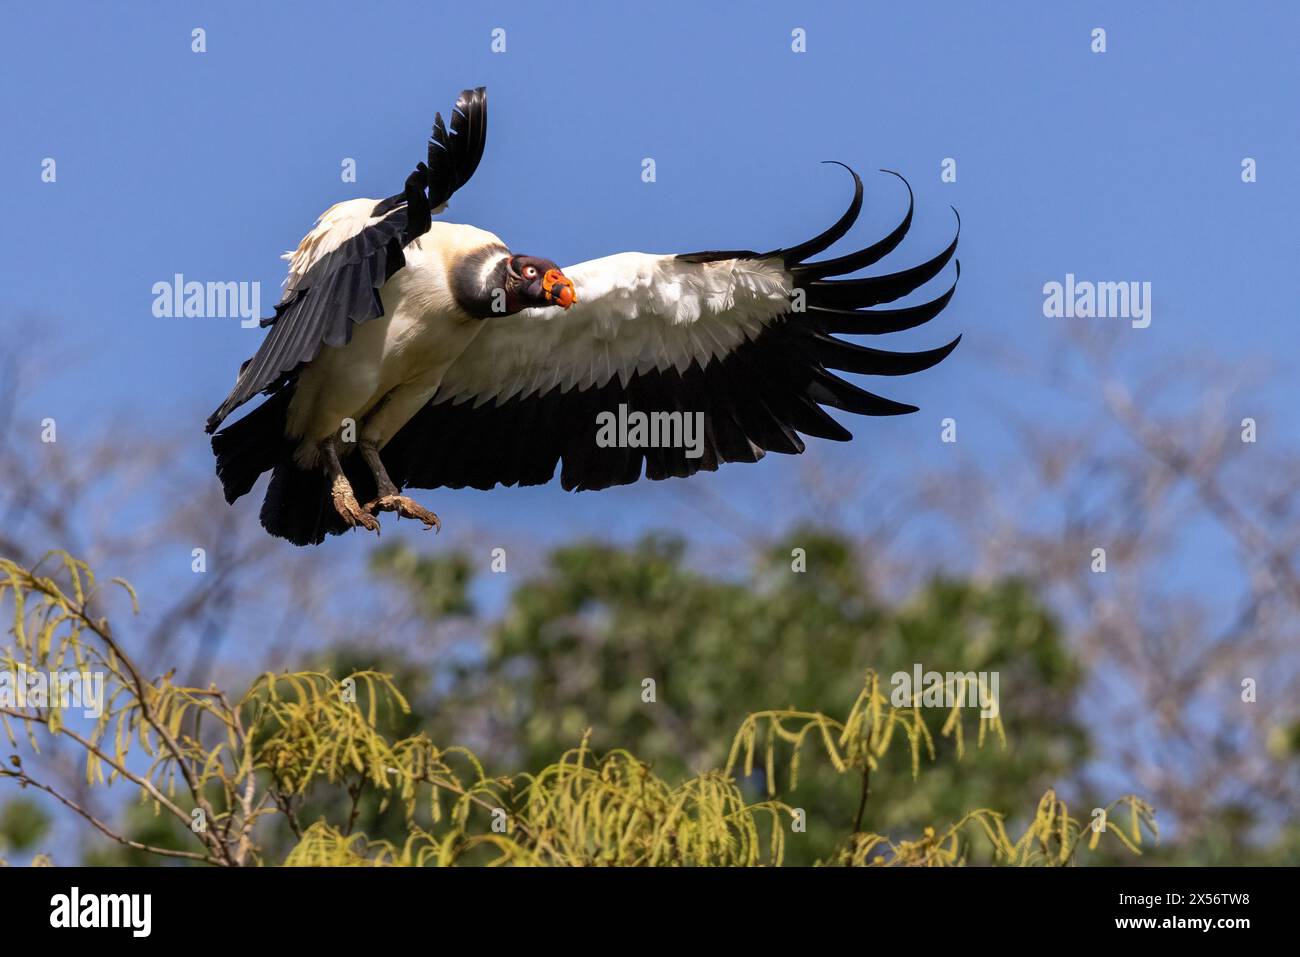 King vulture (Sarcoramphus papa) in flight - La Laguna del Lagarto Eco-Lodge, Boca Tapada, Costa Rica Stock Photo